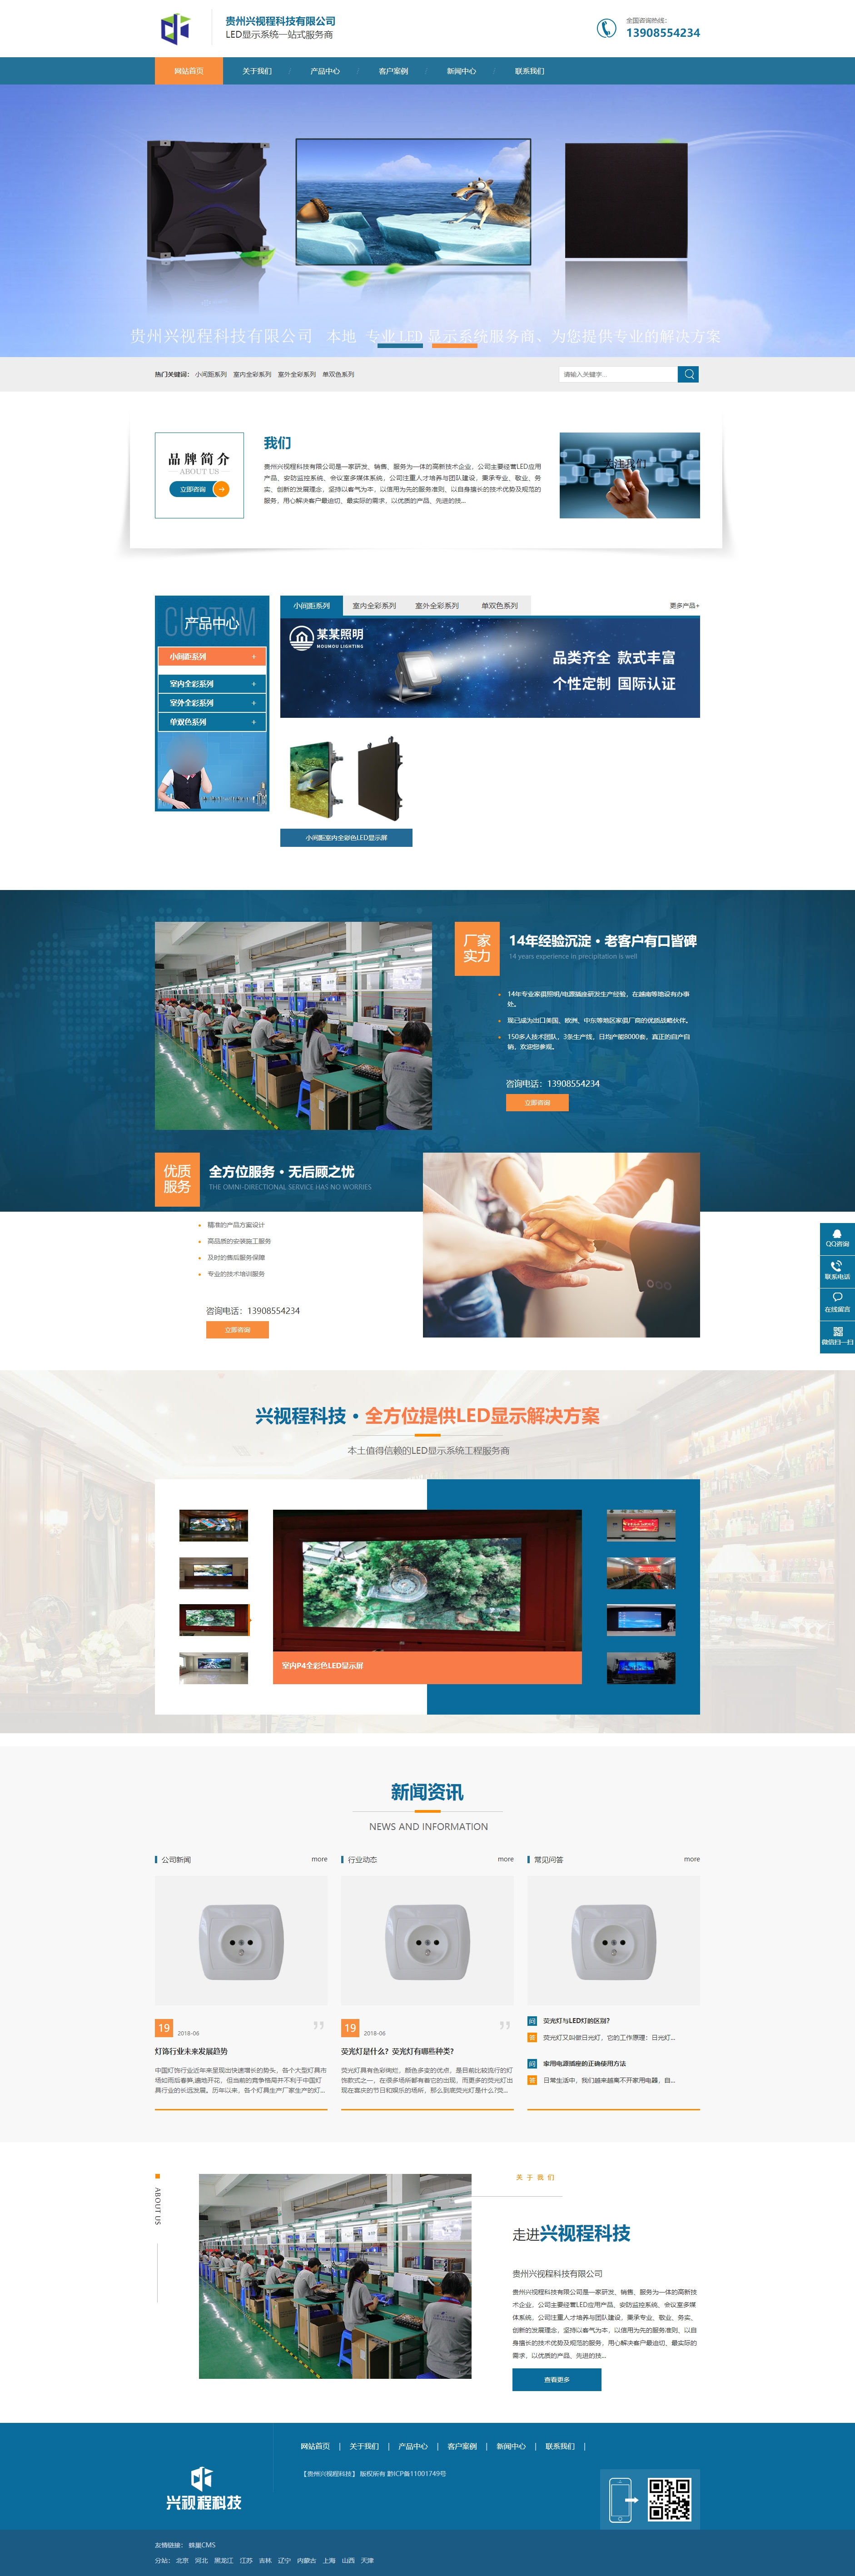 贞丰贵州兴视程科技有限公司 网站正式上线